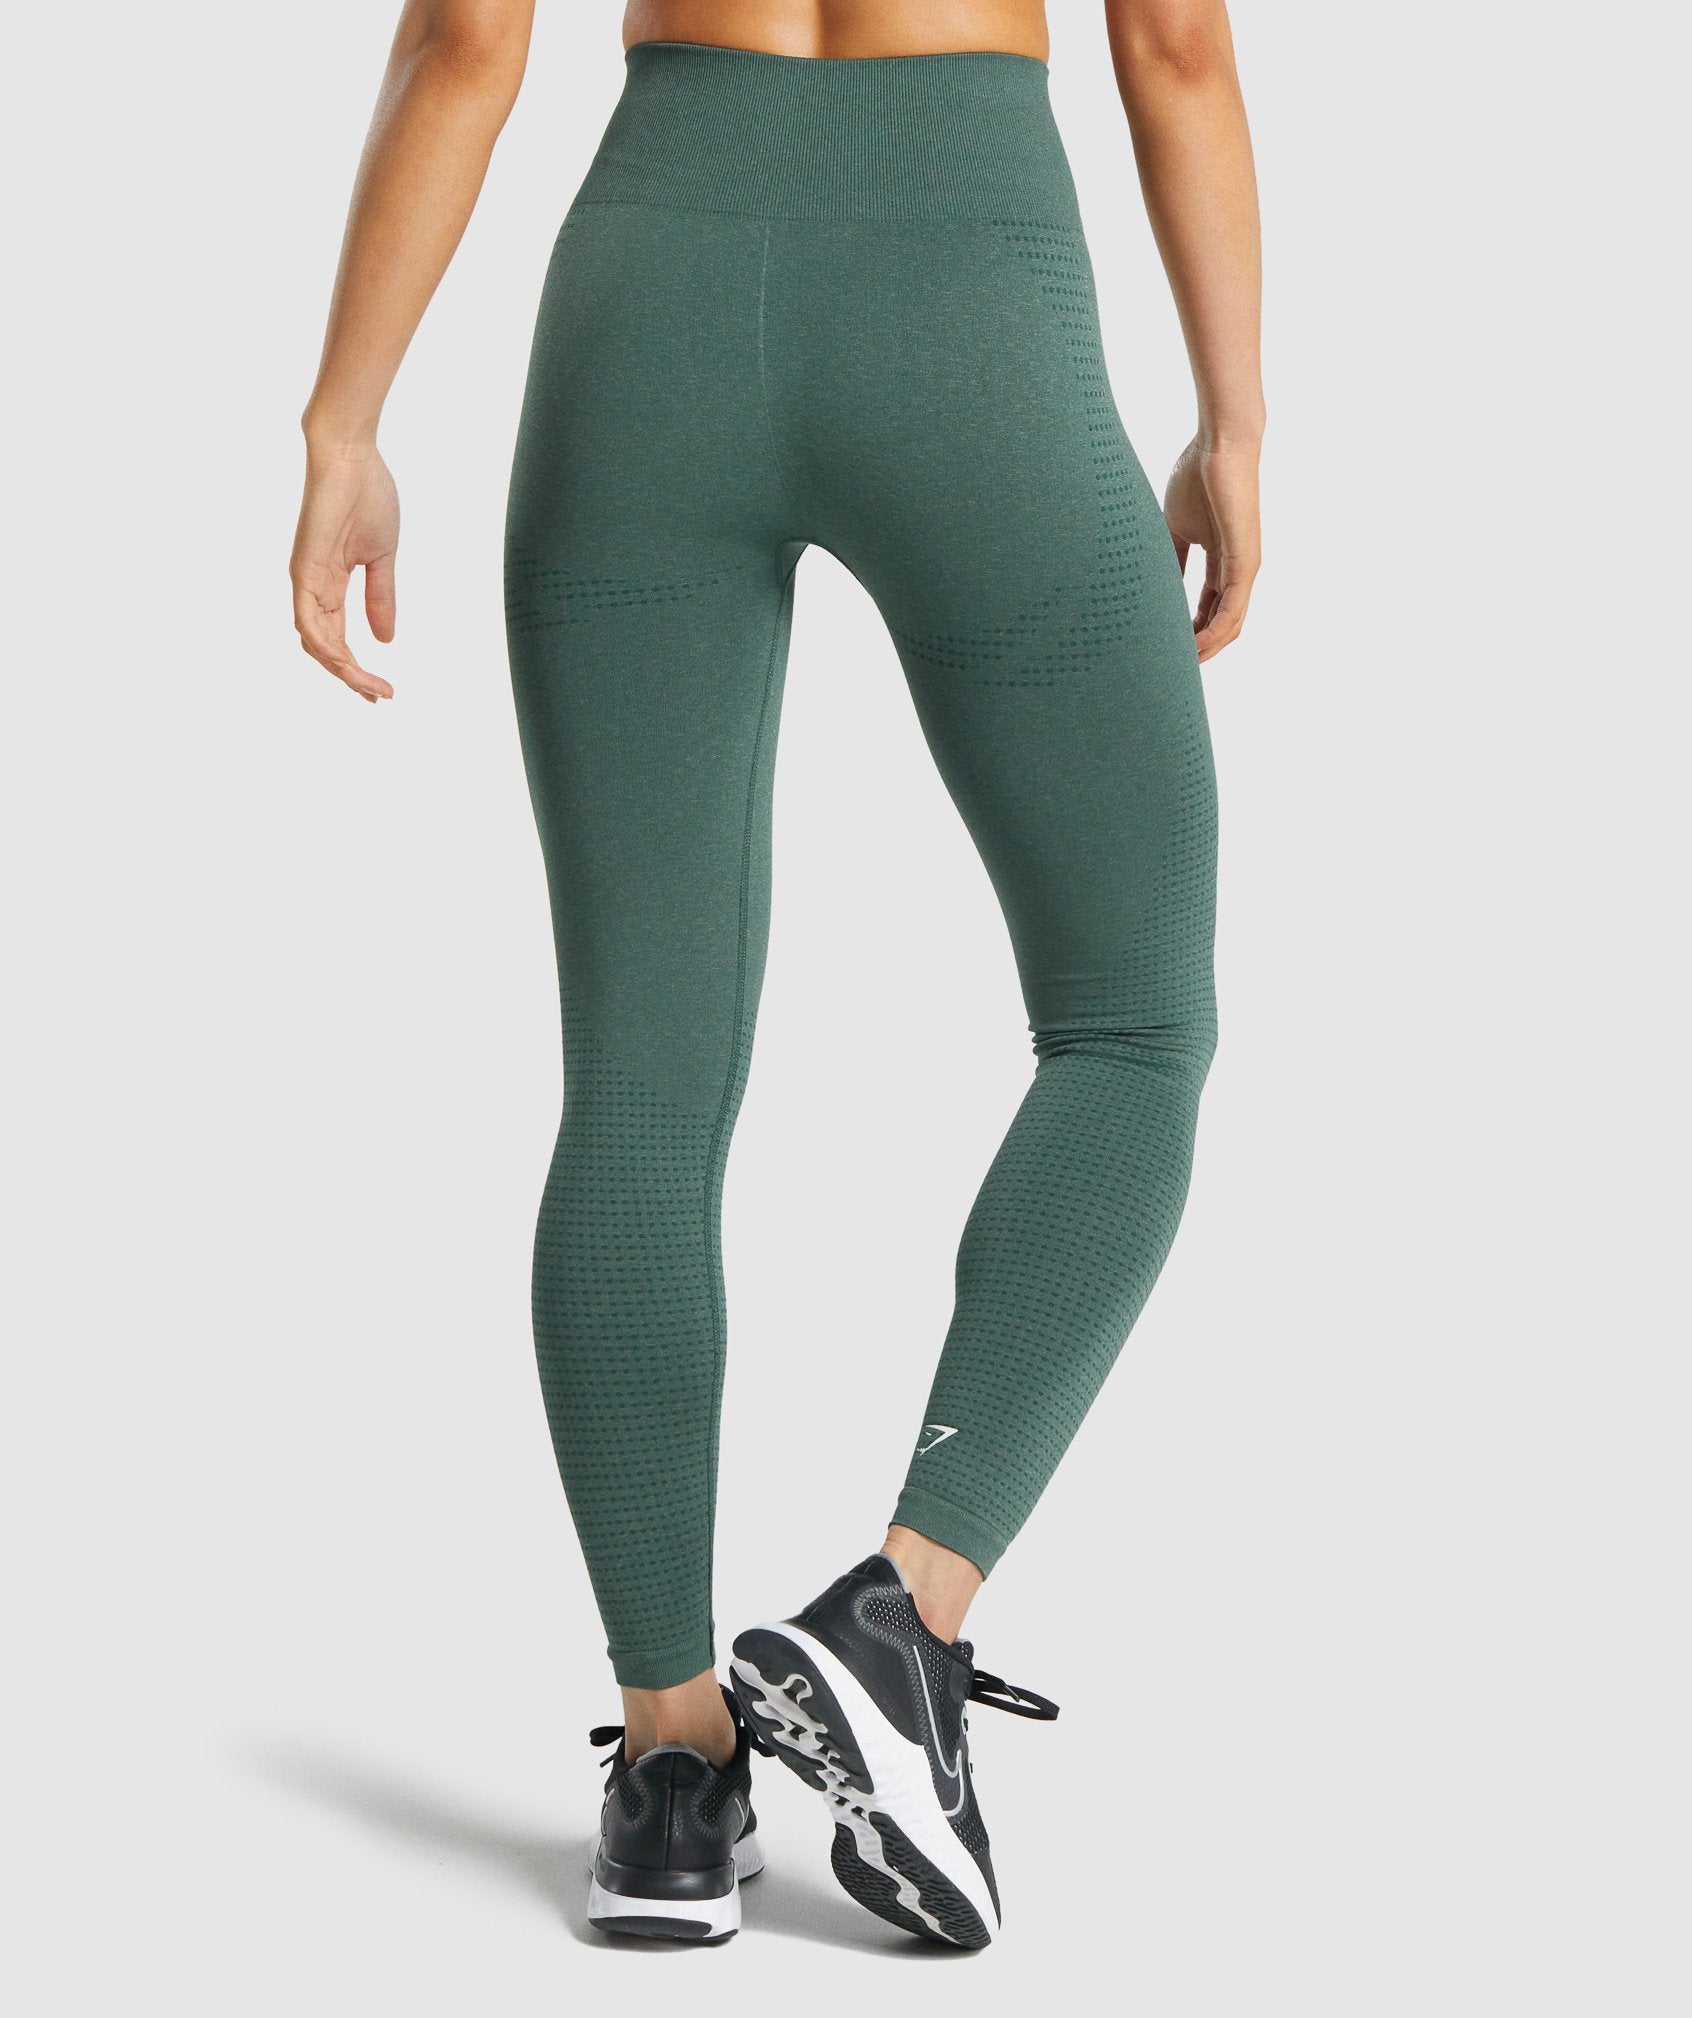 Gymshark Vital Seamless Leggings - Dark Green Marl Size S BRAND